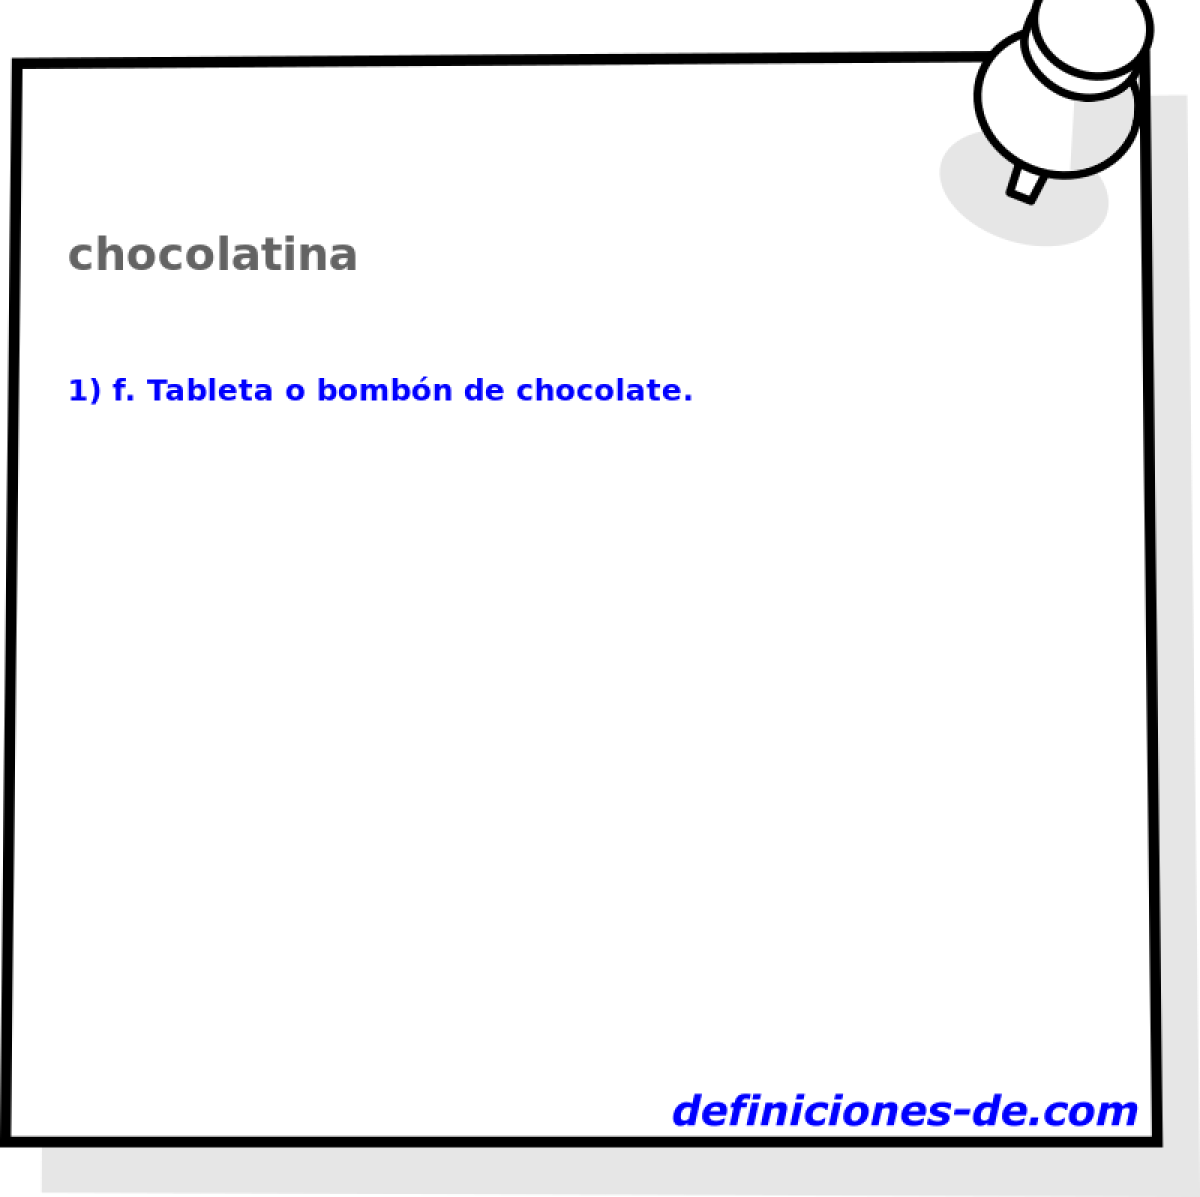 chocolatina 